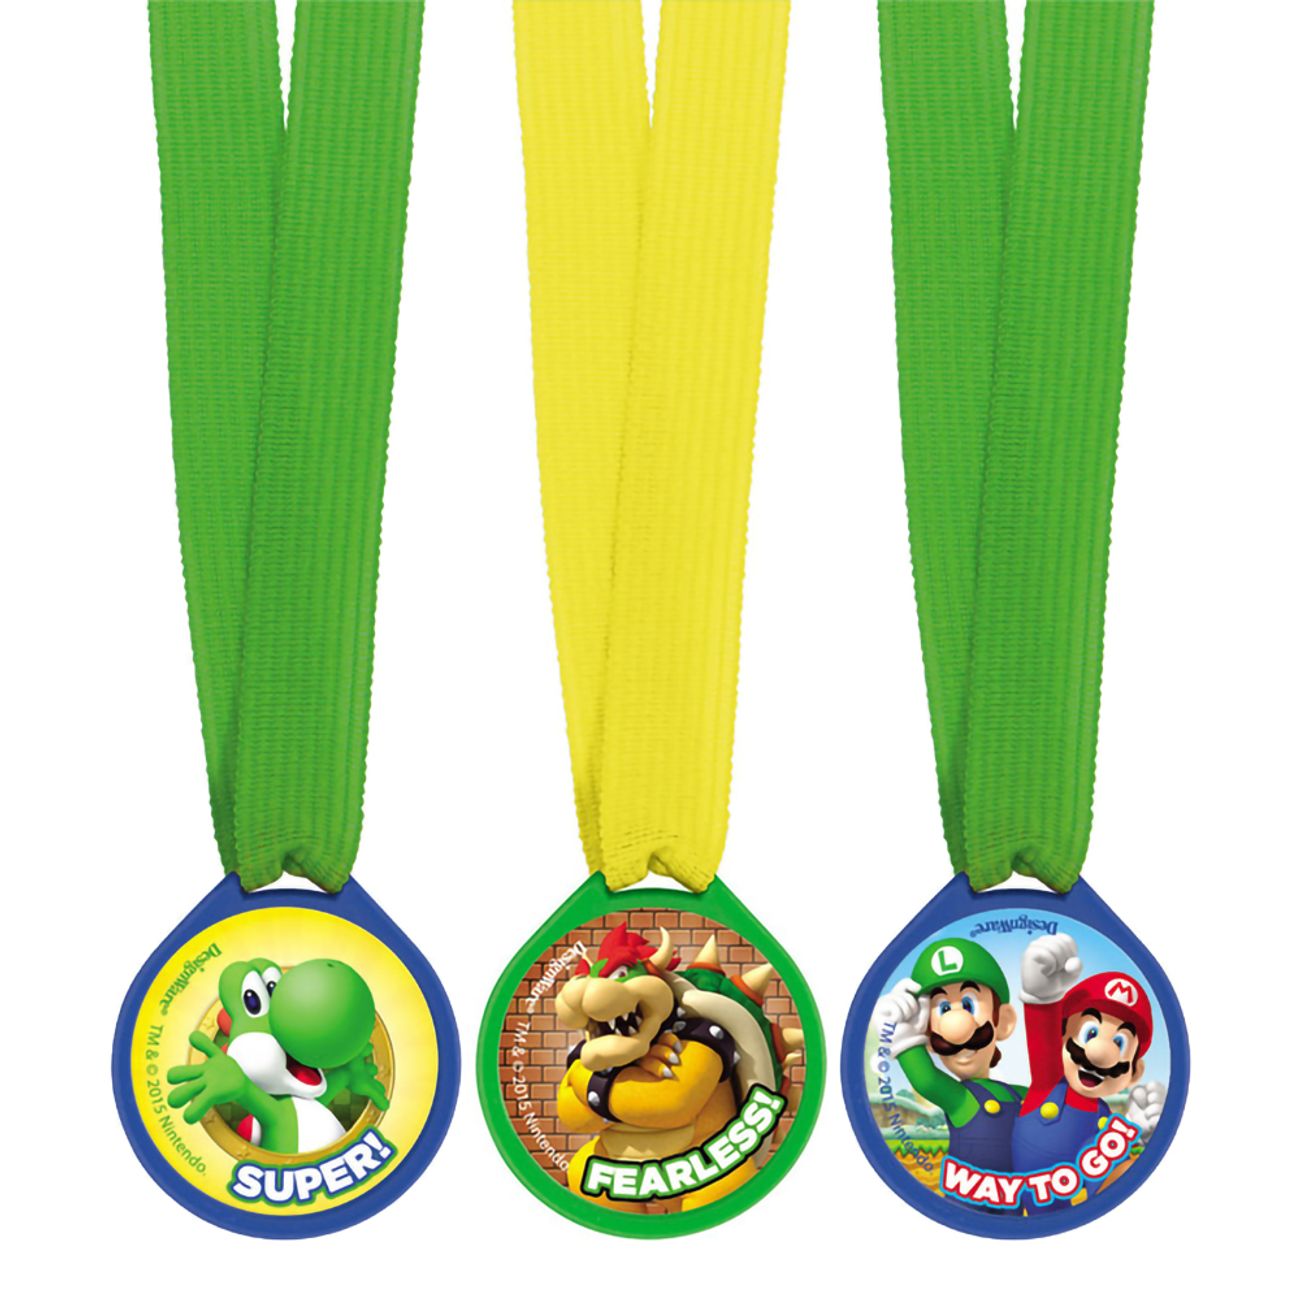 super-mario-medaljer-102585-2